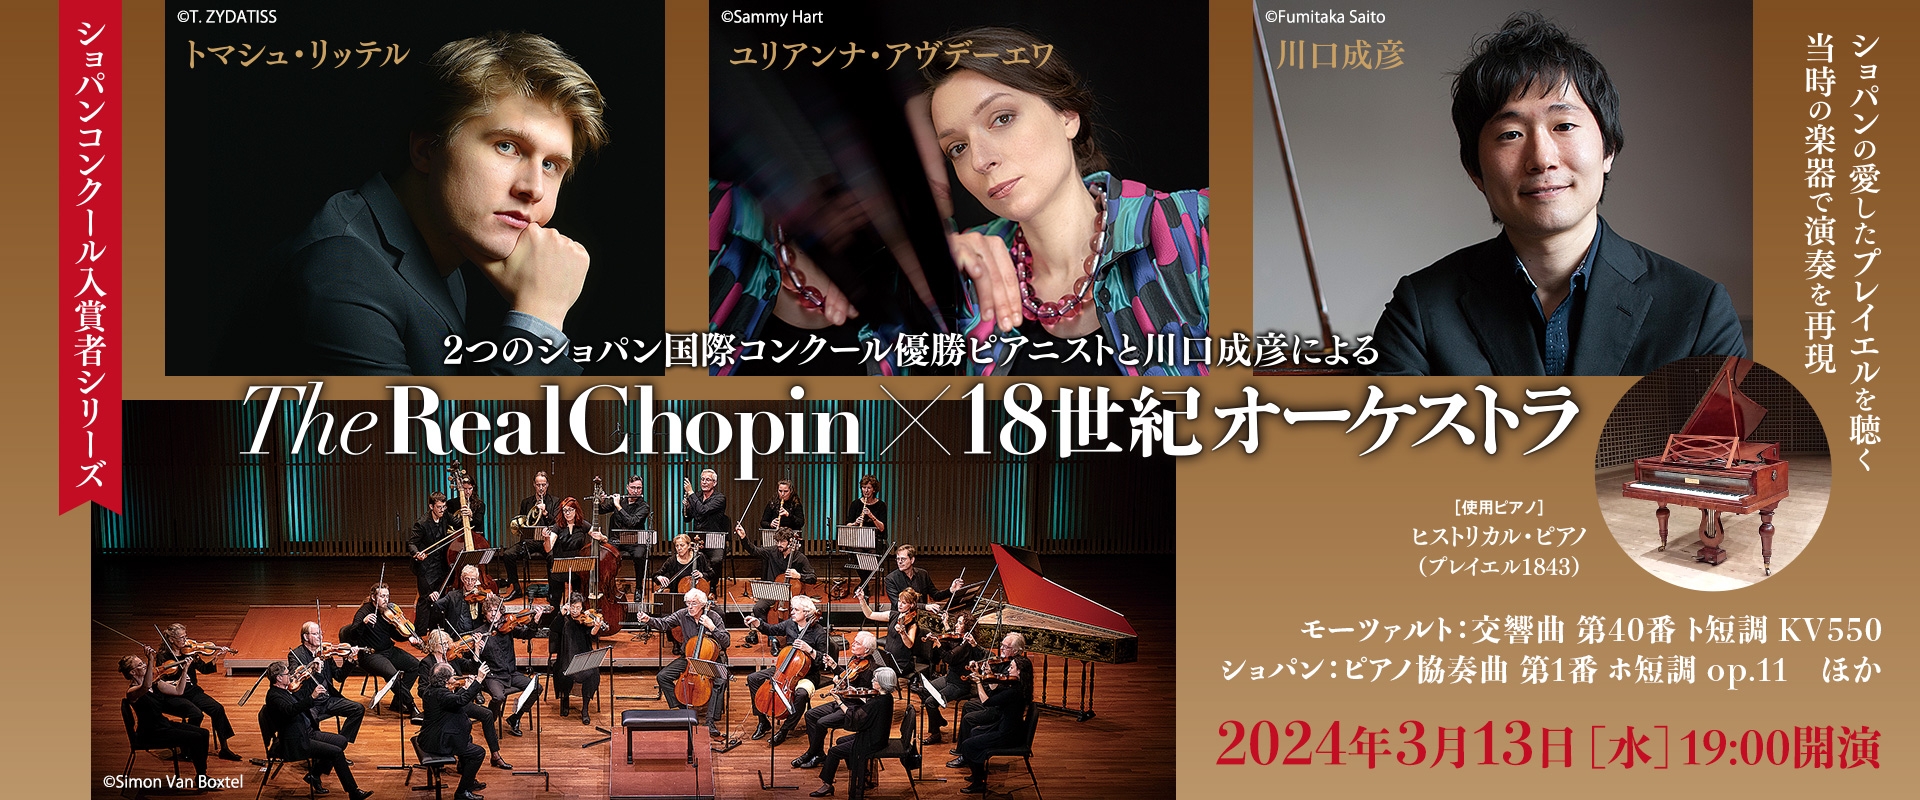 The Real Chopin × 18世紀オーケストラ